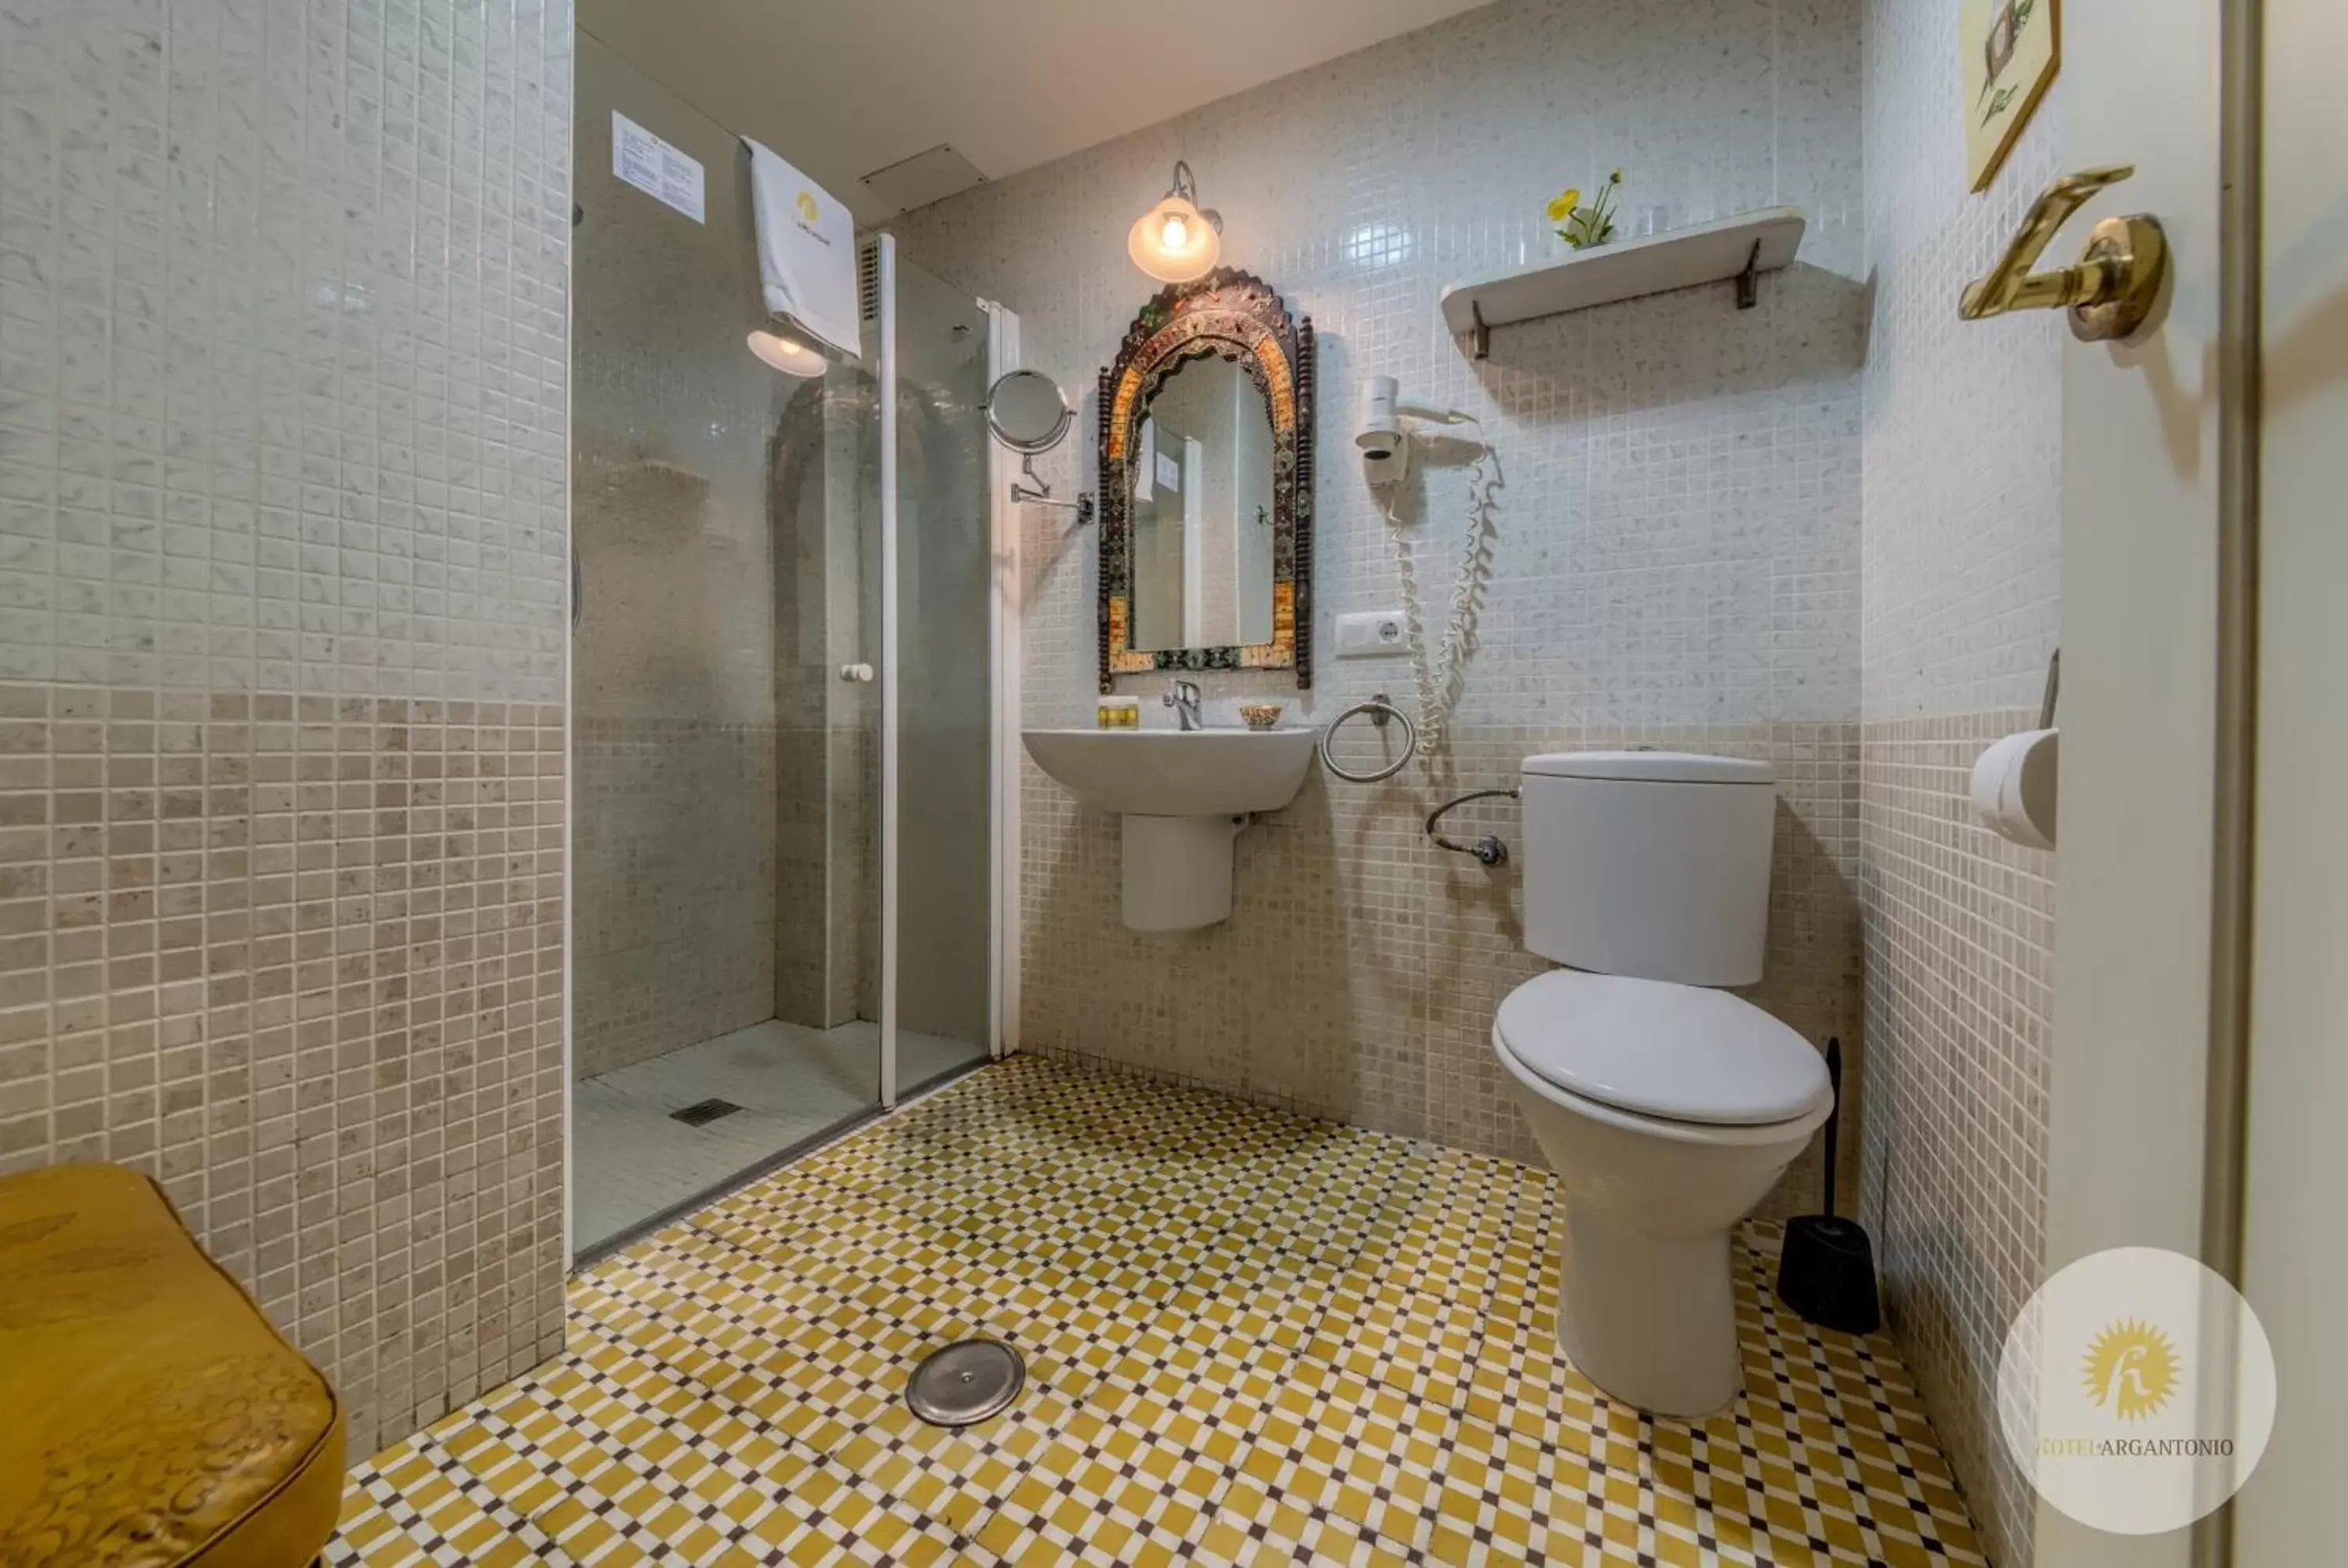 Shower, Bathroom in Hotel Argantonio